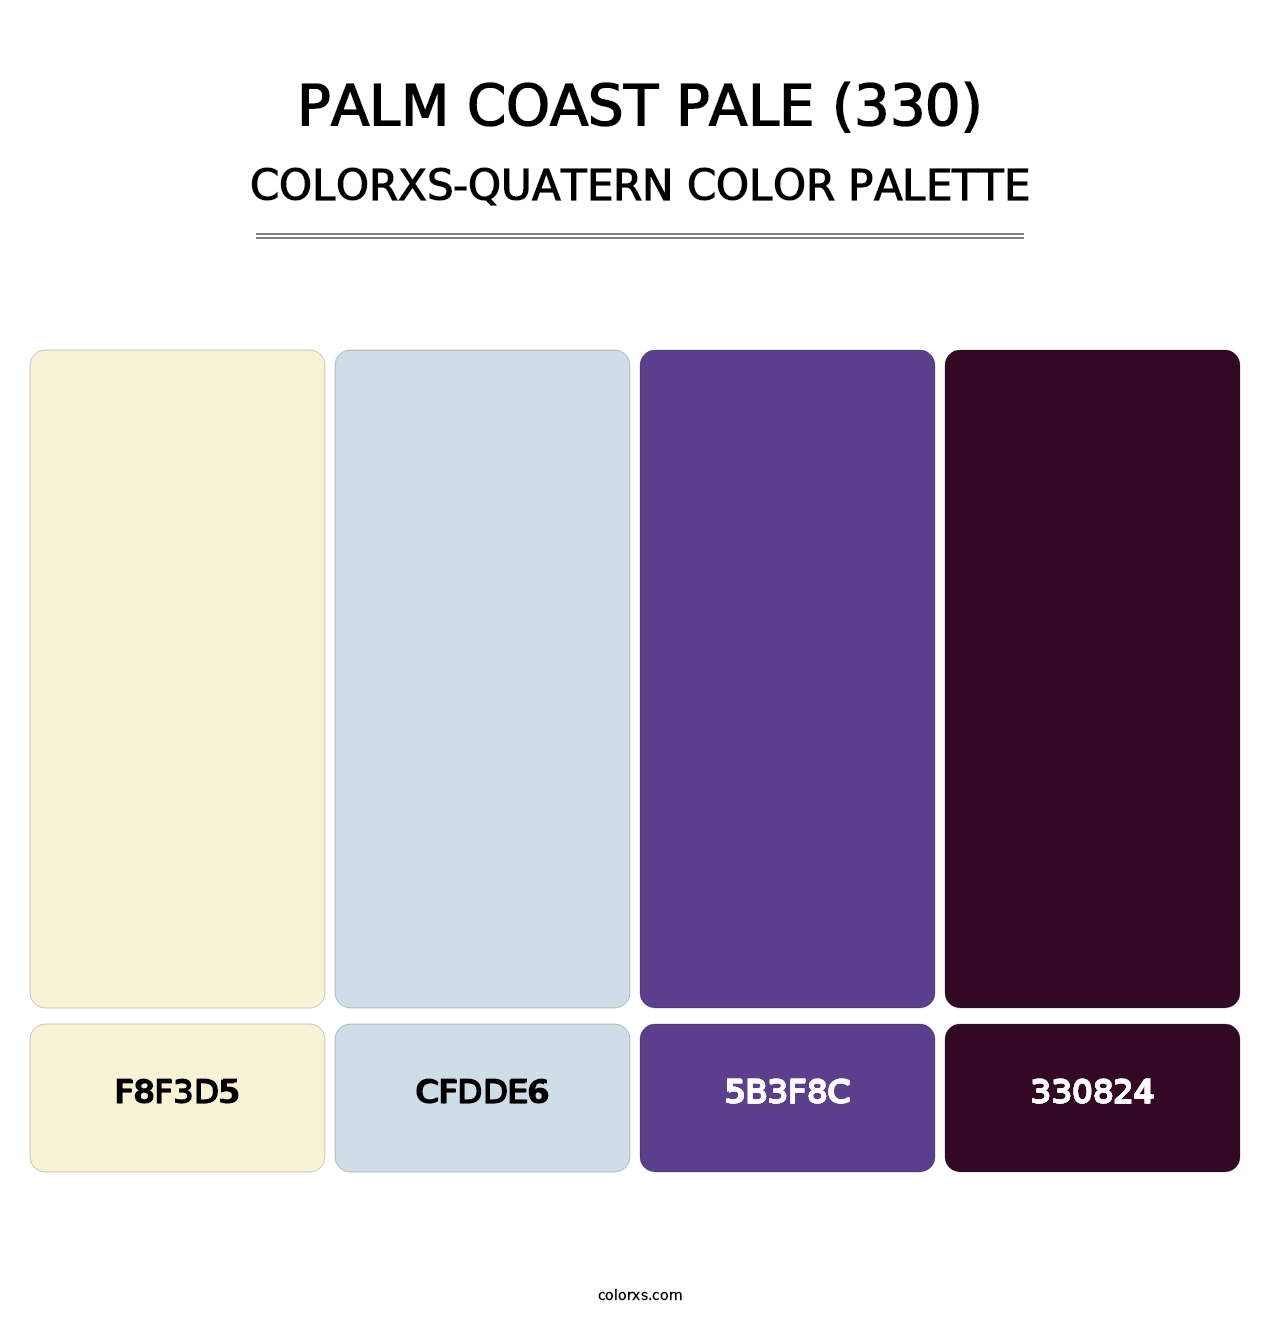 Palm Coast Pale (330) - Colorxs Quatern Palette